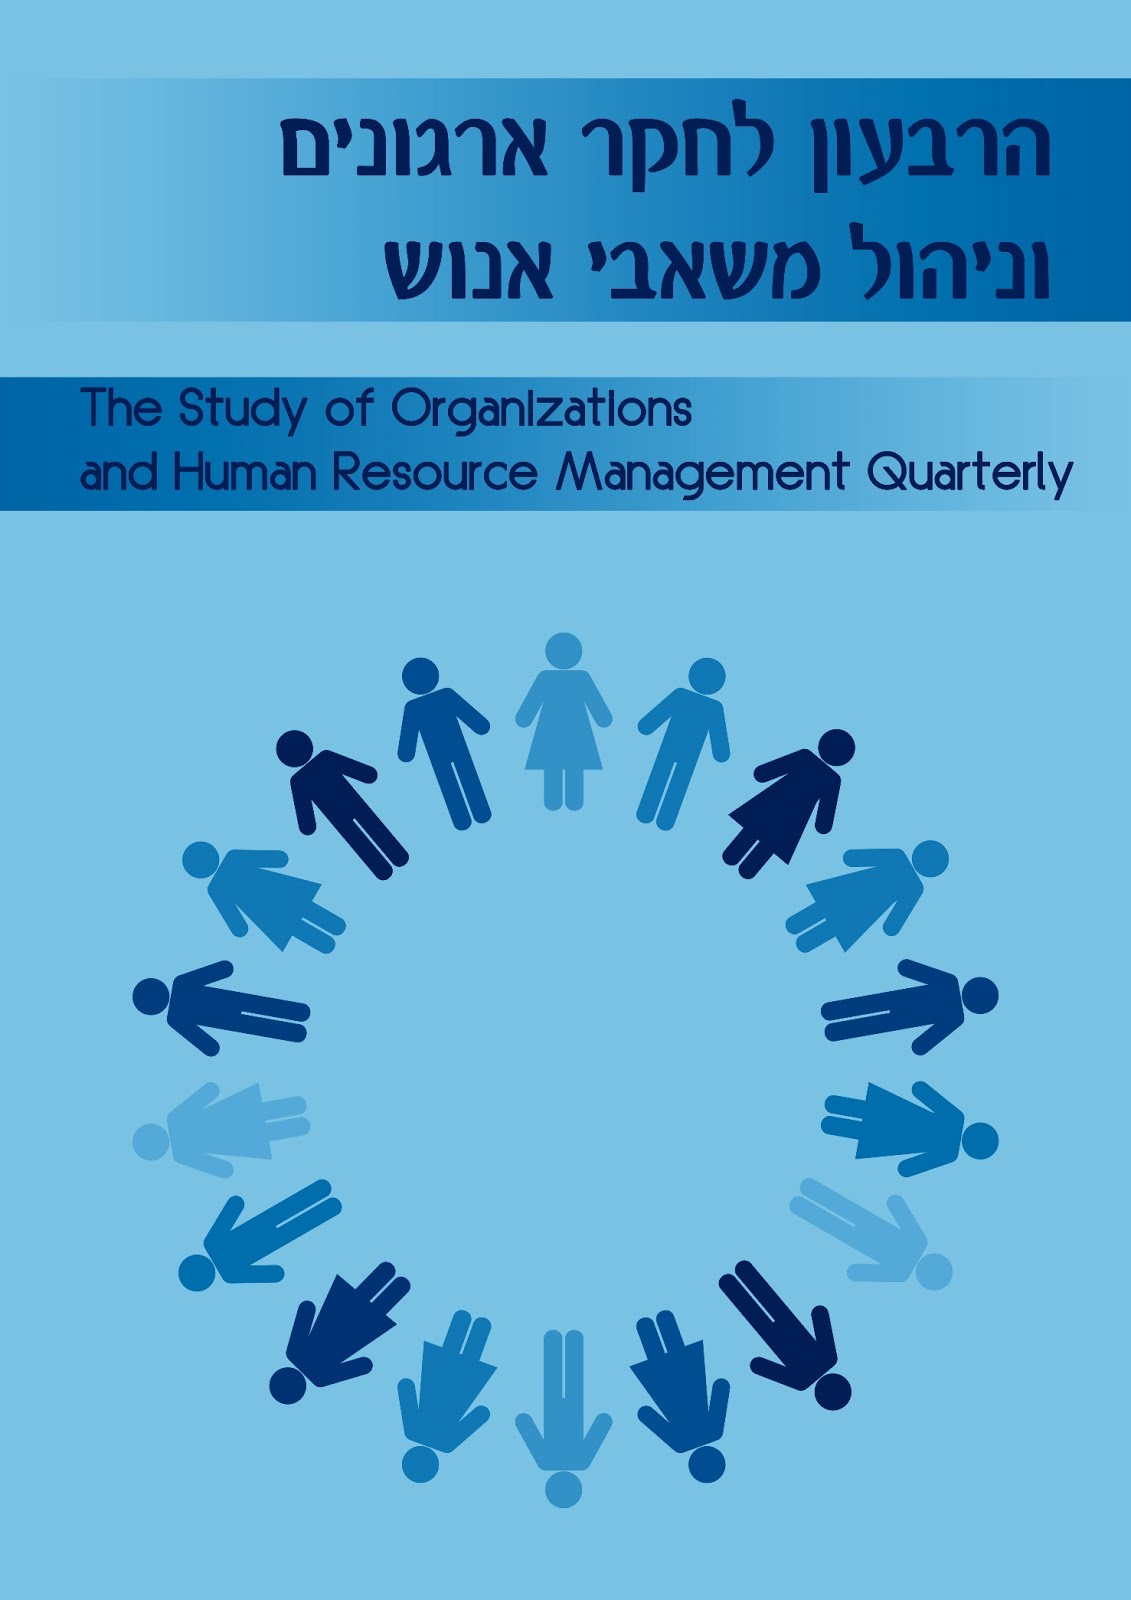 "הרבעון לחקר ארגונים וניהול המשאב האנושי" גיליון 1(2), יולי 2016